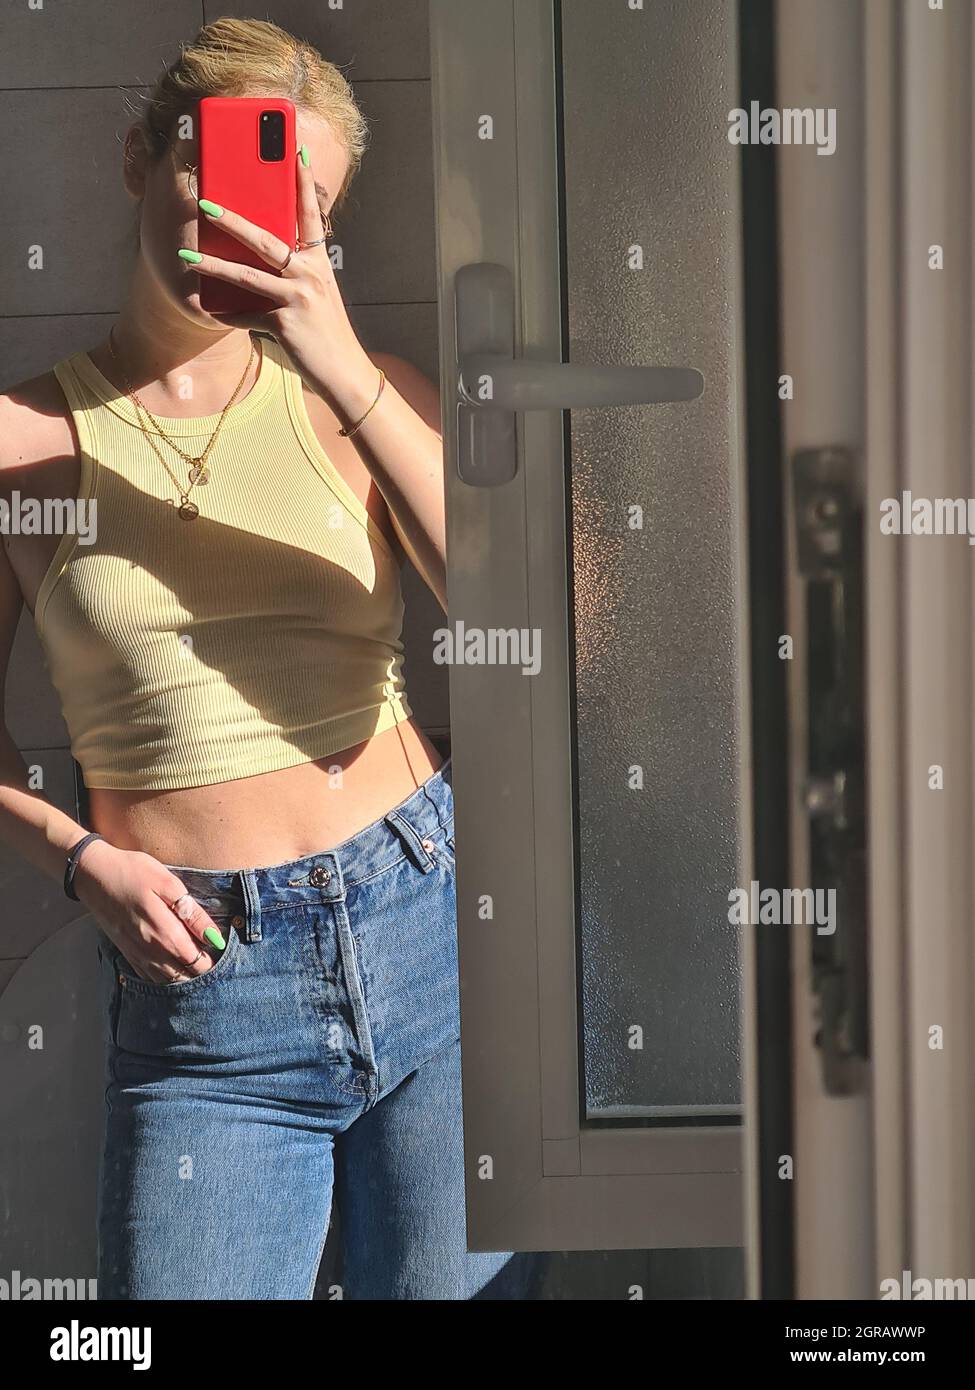 Jeune femme faisant Selfie debout devant le miroir Photo Stock - Alamy